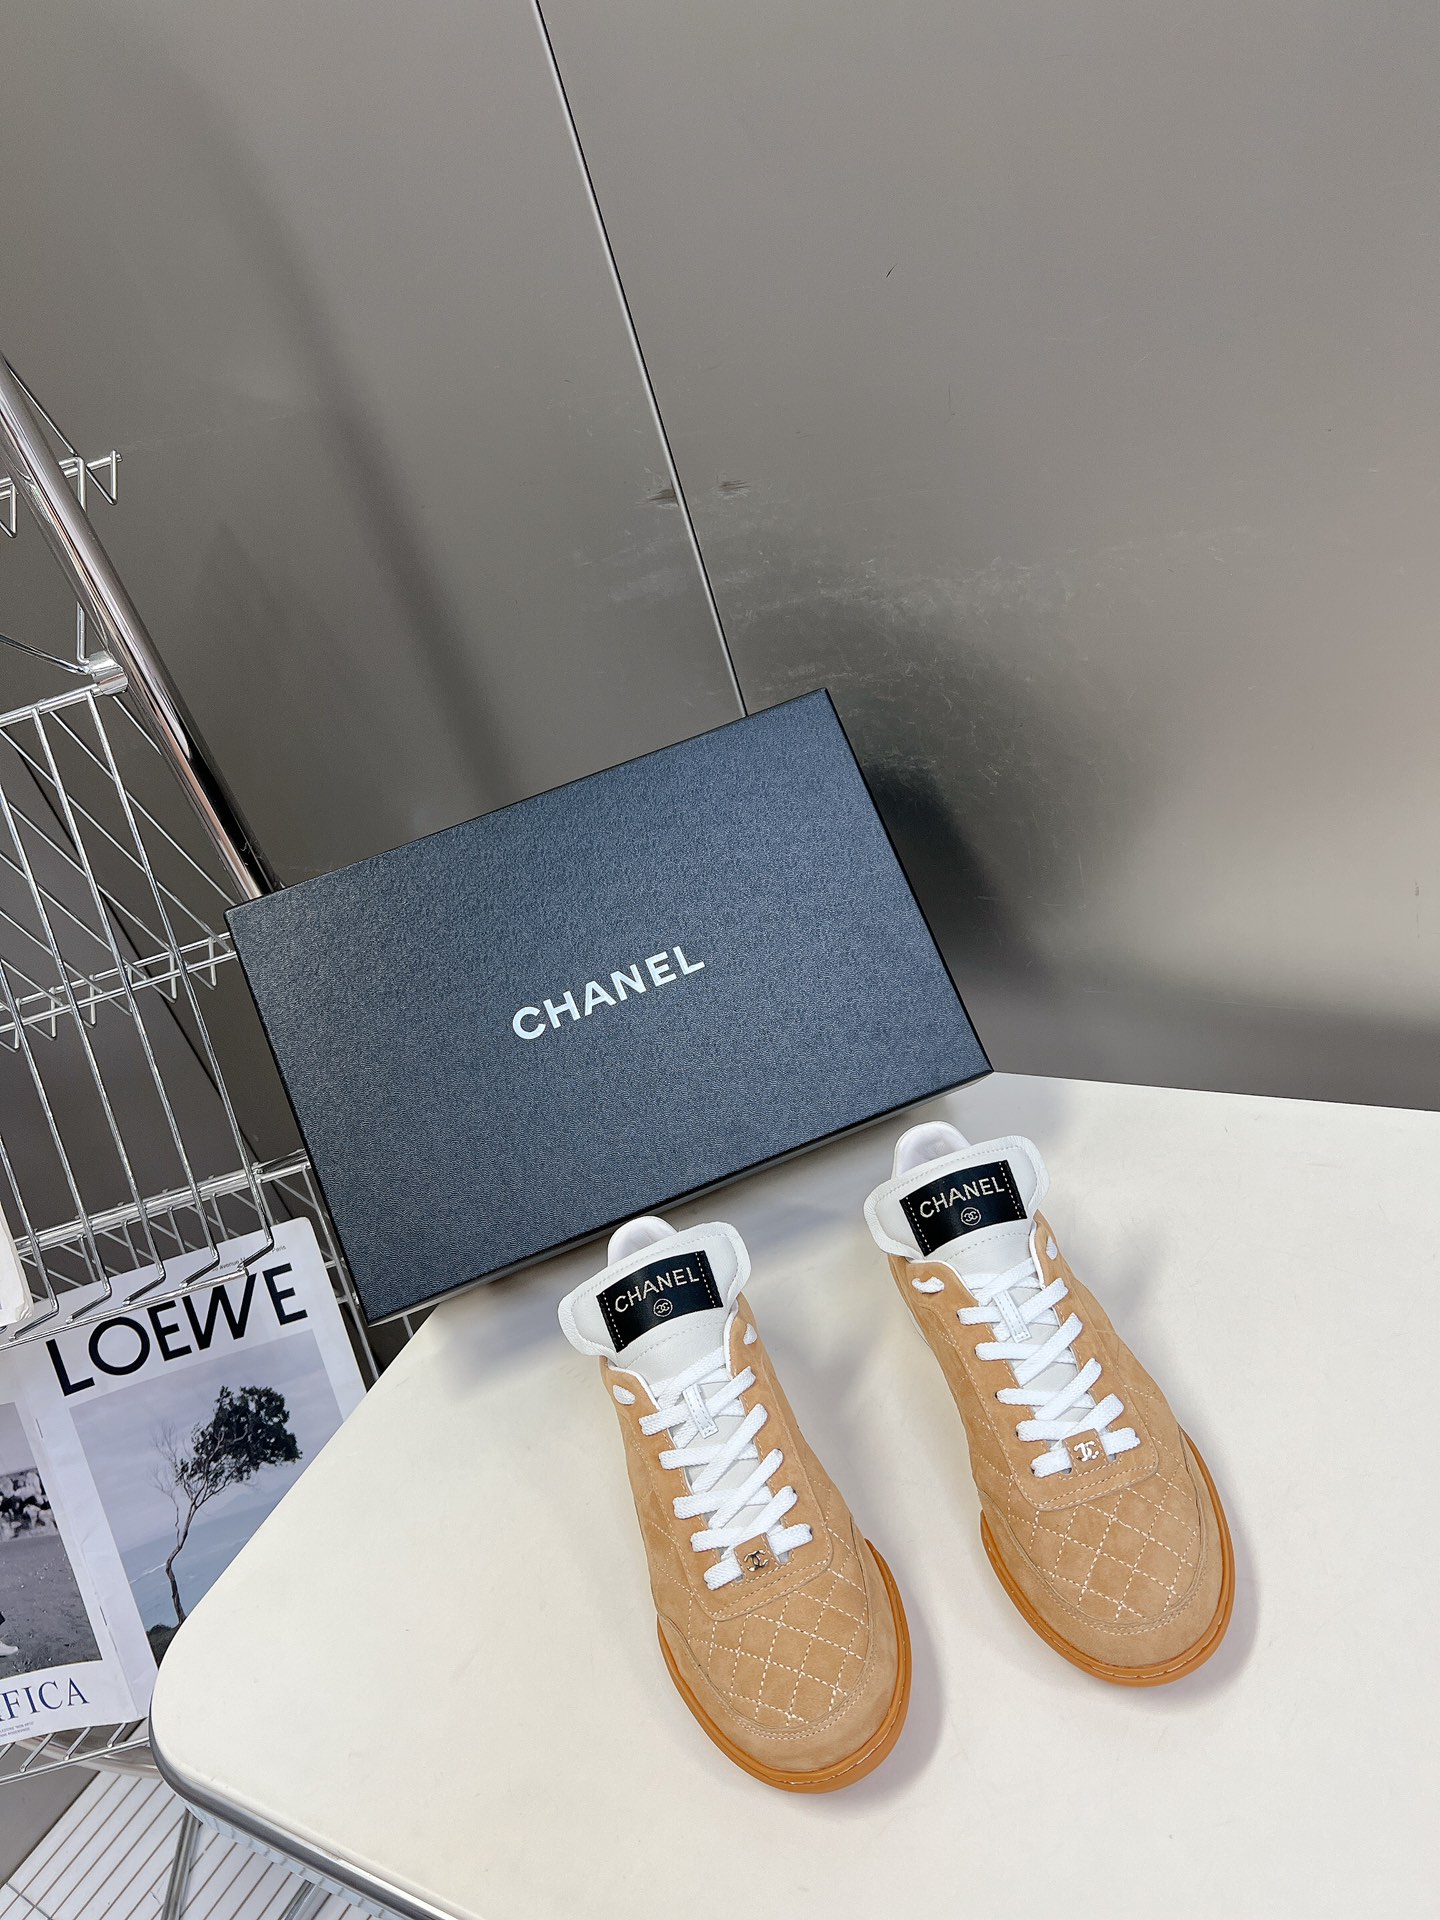 Chanel Shoes Sneakers Black White Women Lambskin Rubber Sheepskin Vintage Casual